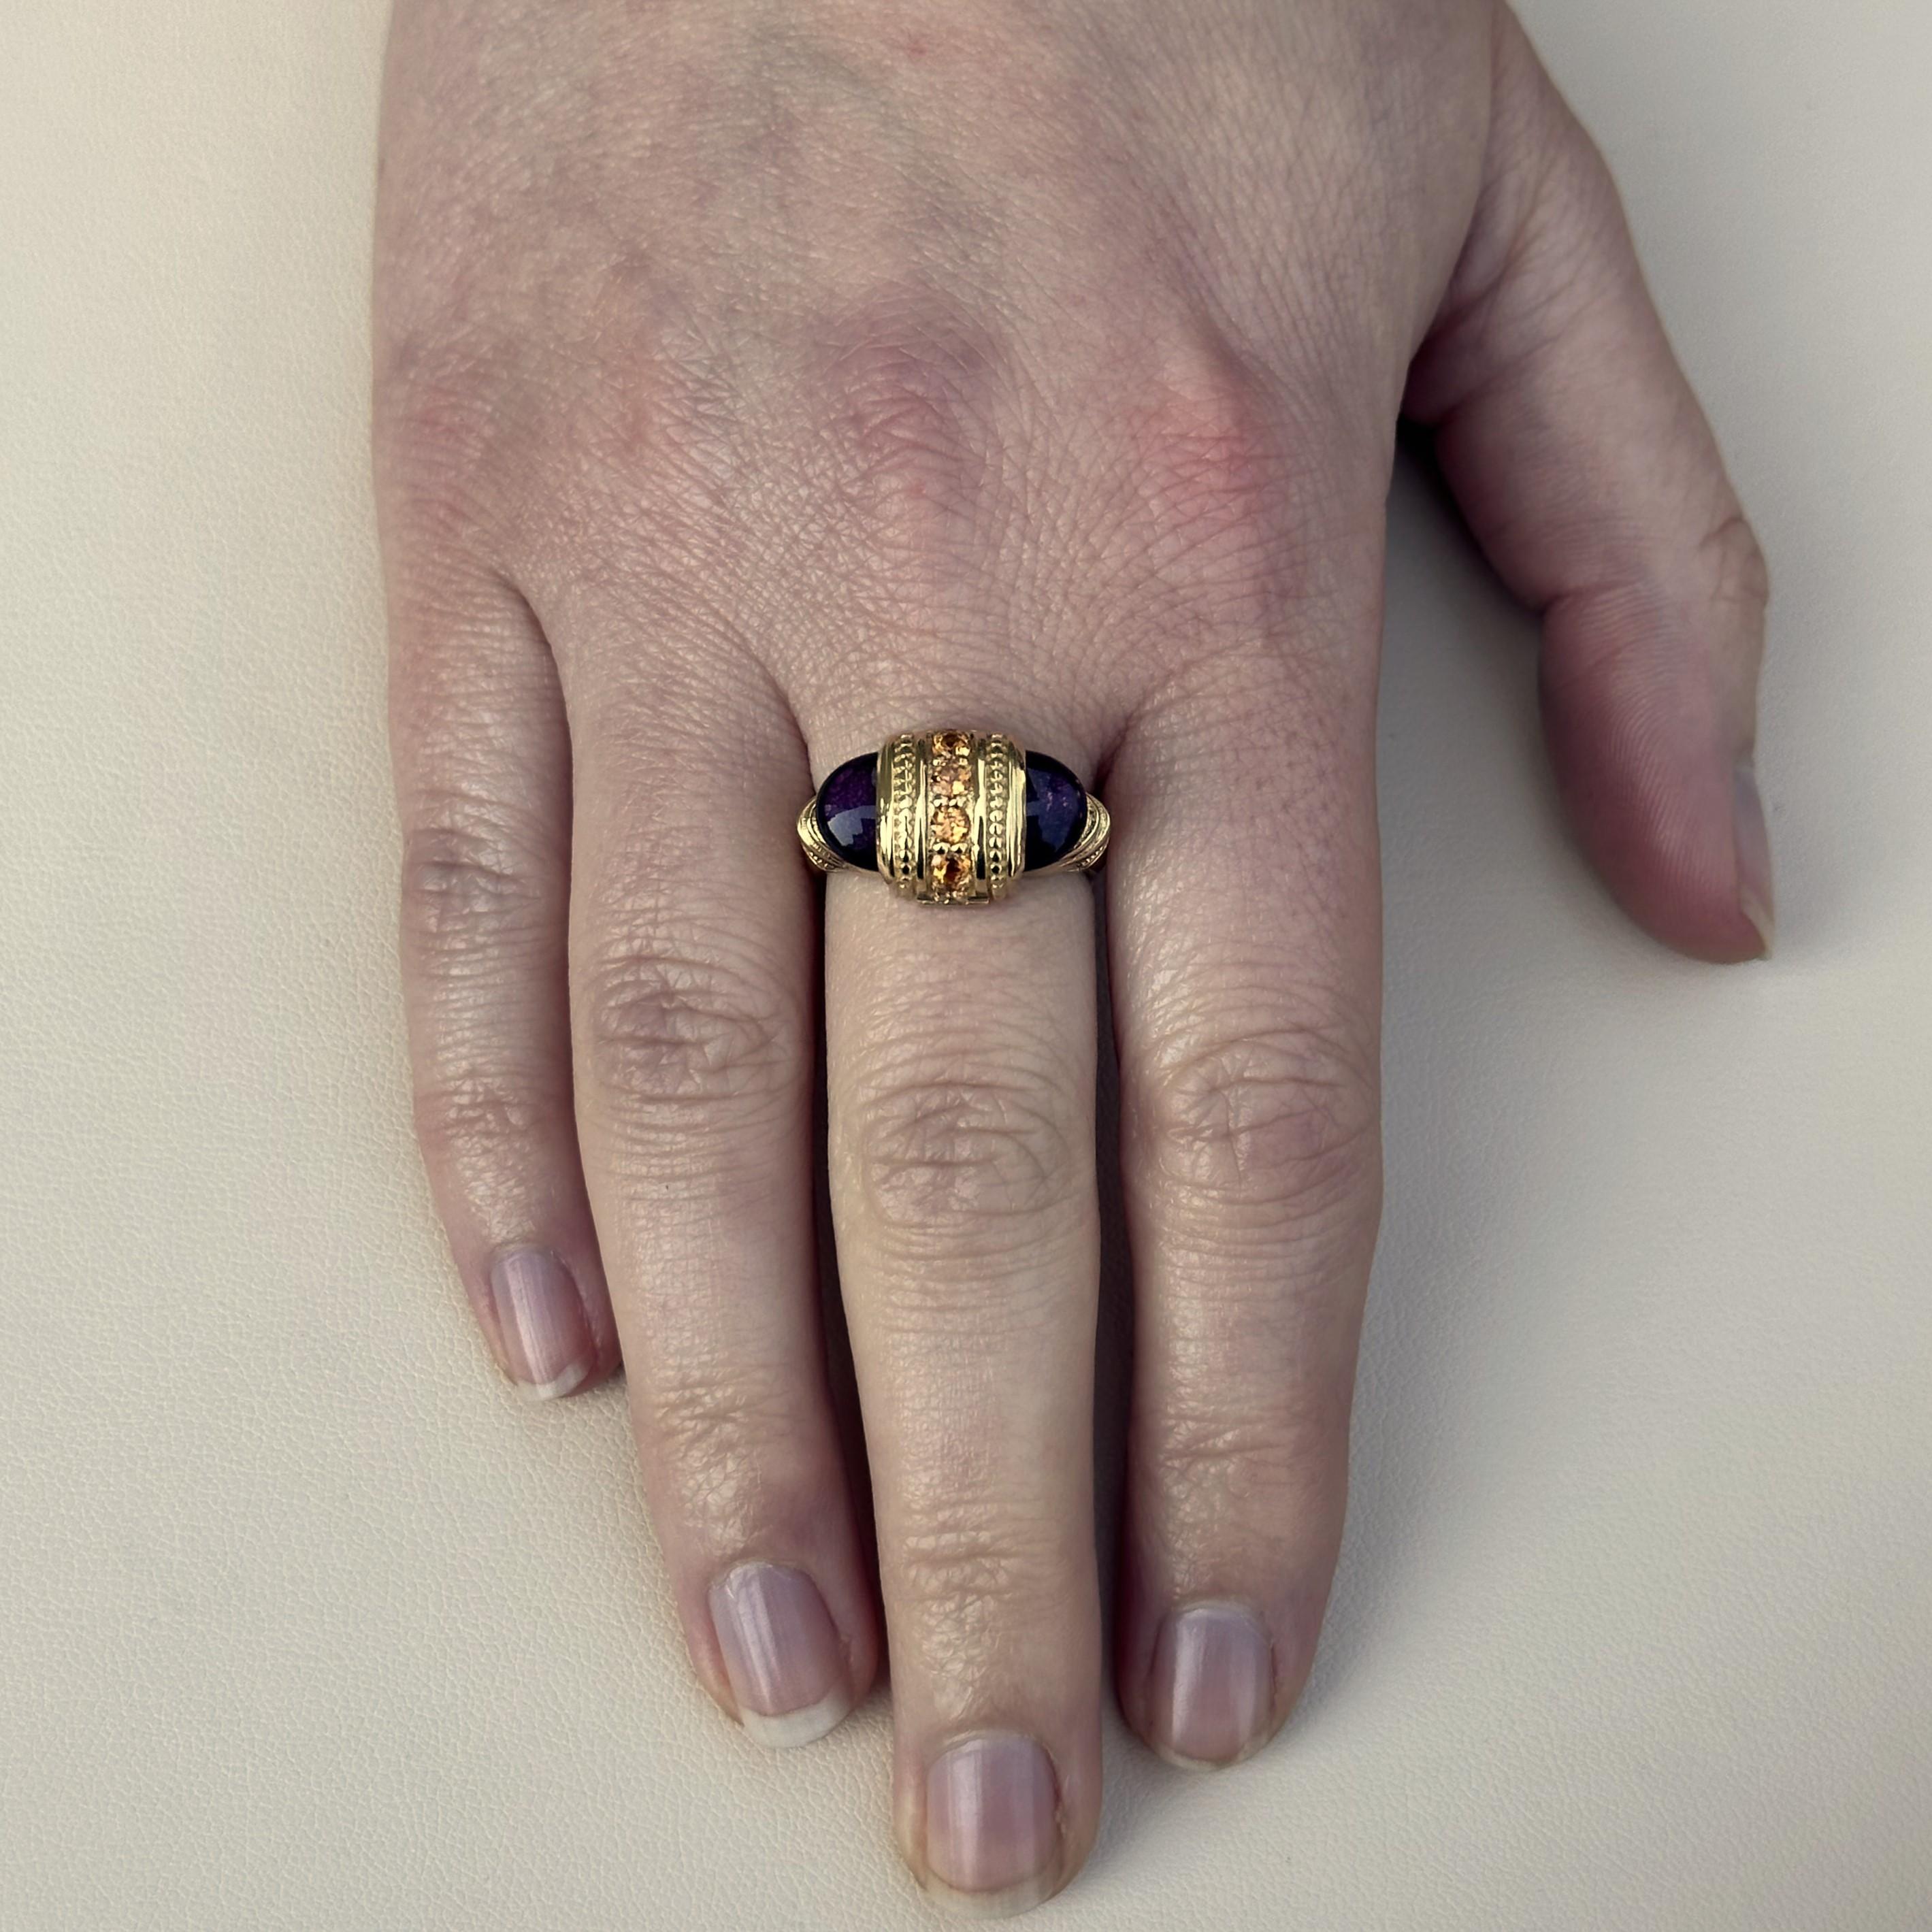 Ein bogenförmiger Ring aus 18 Karat Gelbgold mit Amethysten im Cabochon-Schliff und 2,5 mm großen Zitrinen. Dieser Ring wurde von llyn strong entworfen und hergestellt. 